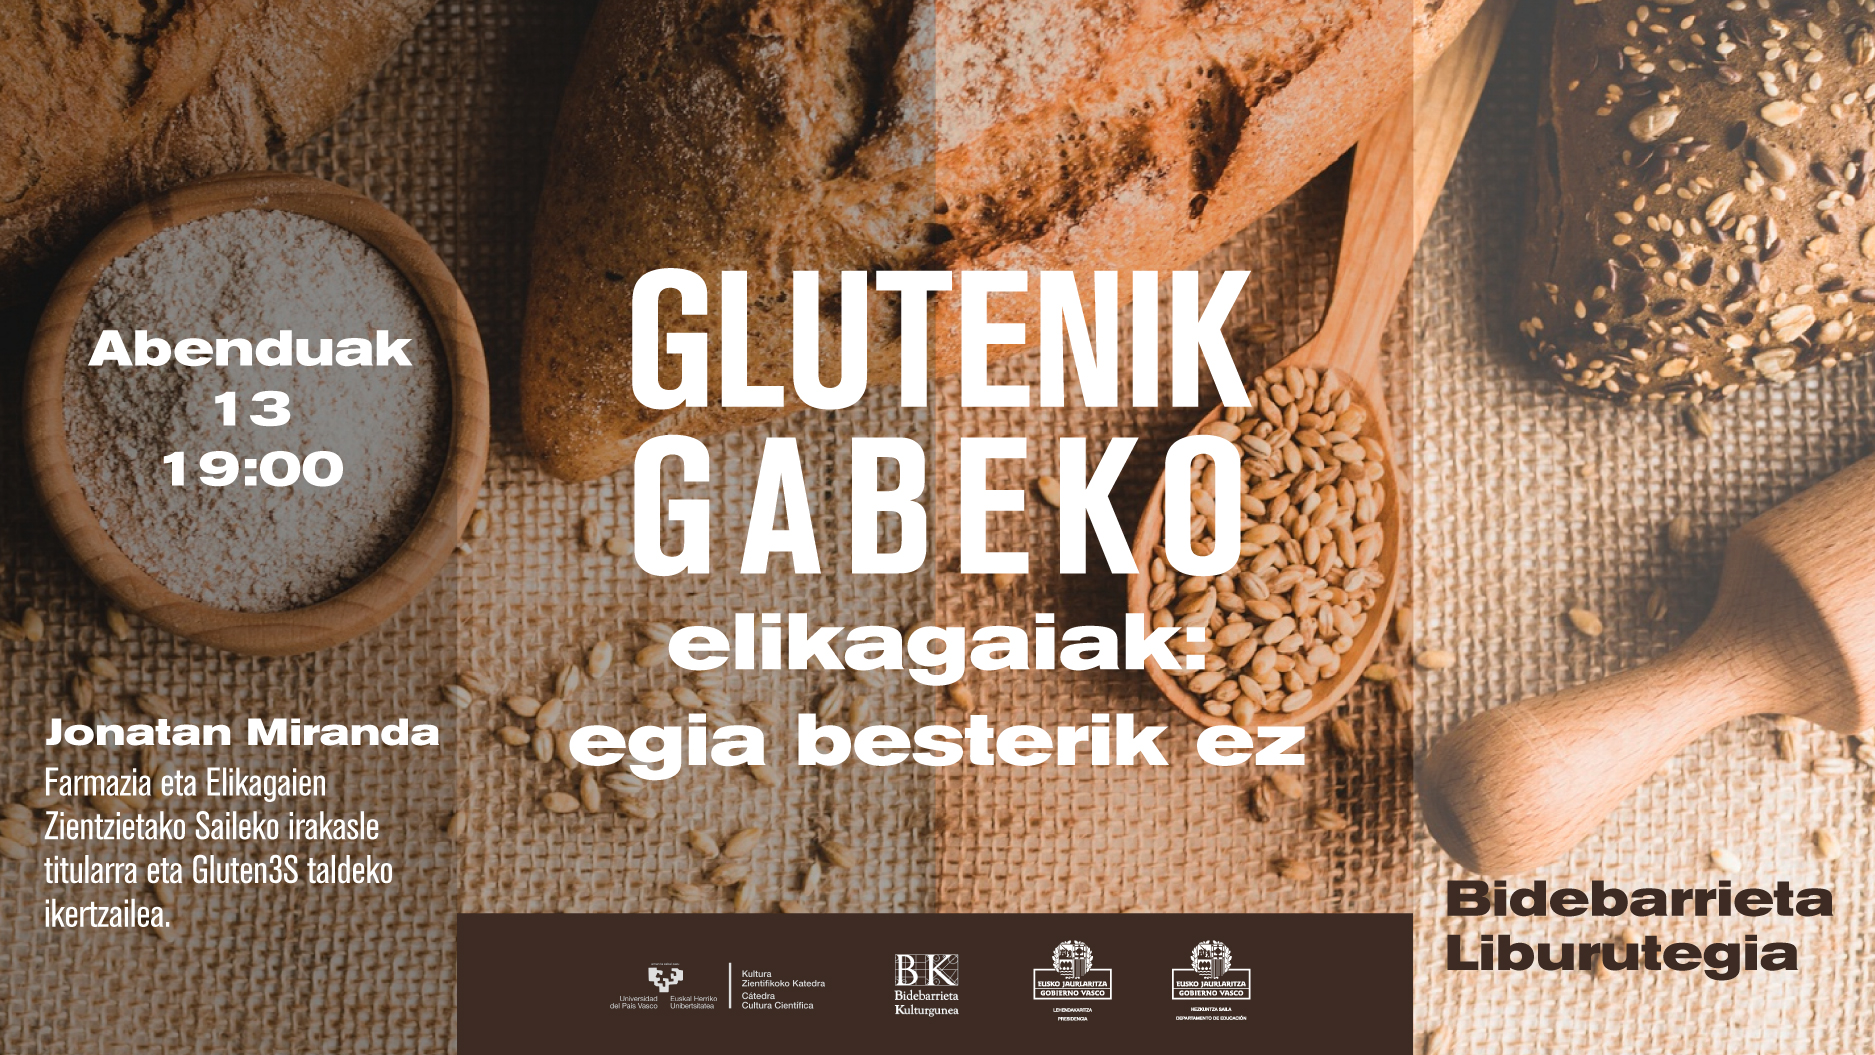 Glutenik gabeko elikagaiak: egia besterik ez/Alimentos sin gluten: la verdad y nada más que la verdad